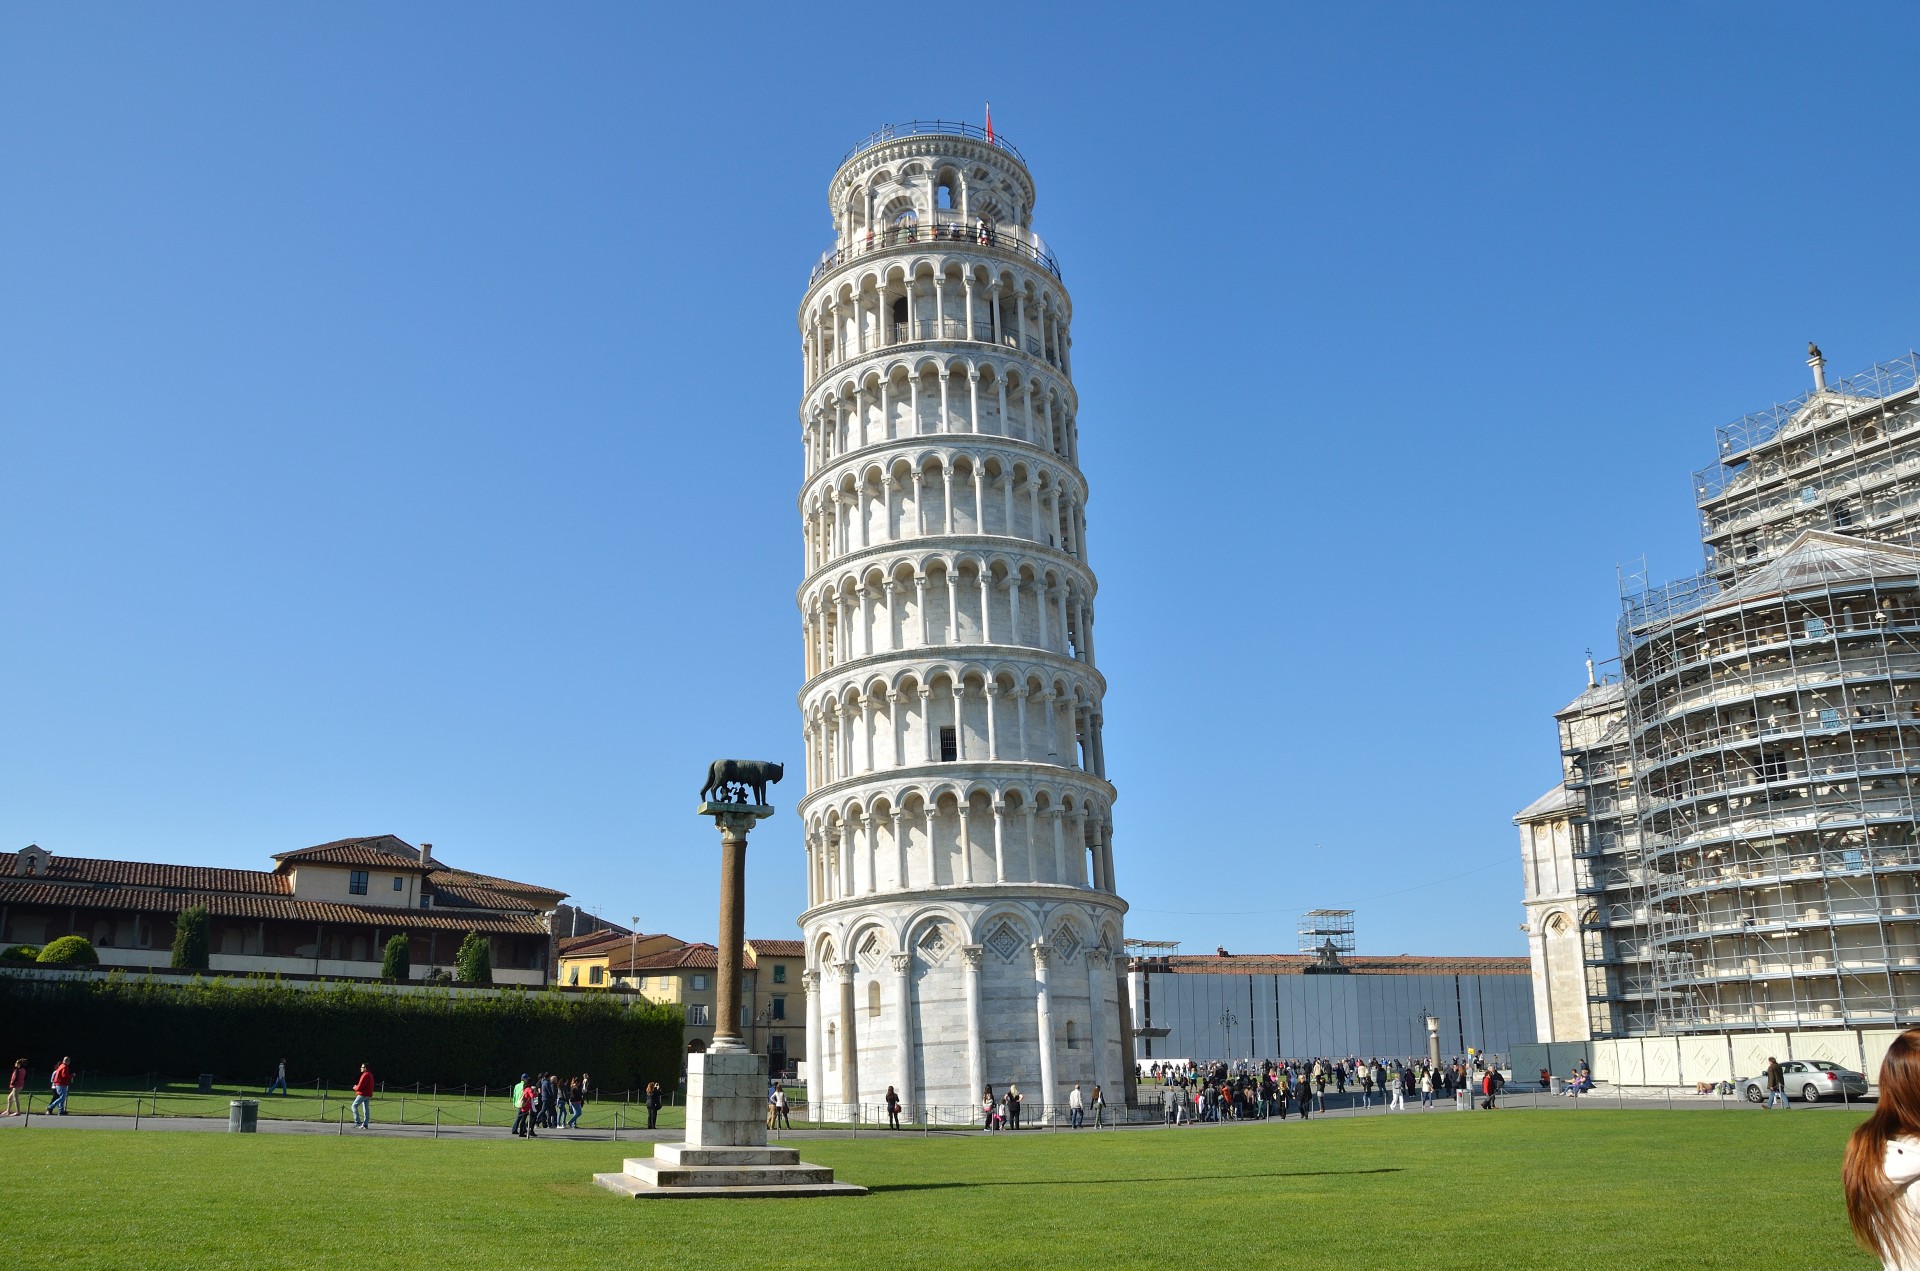 Du lịch Italia - Tháp nghiêng Pisa